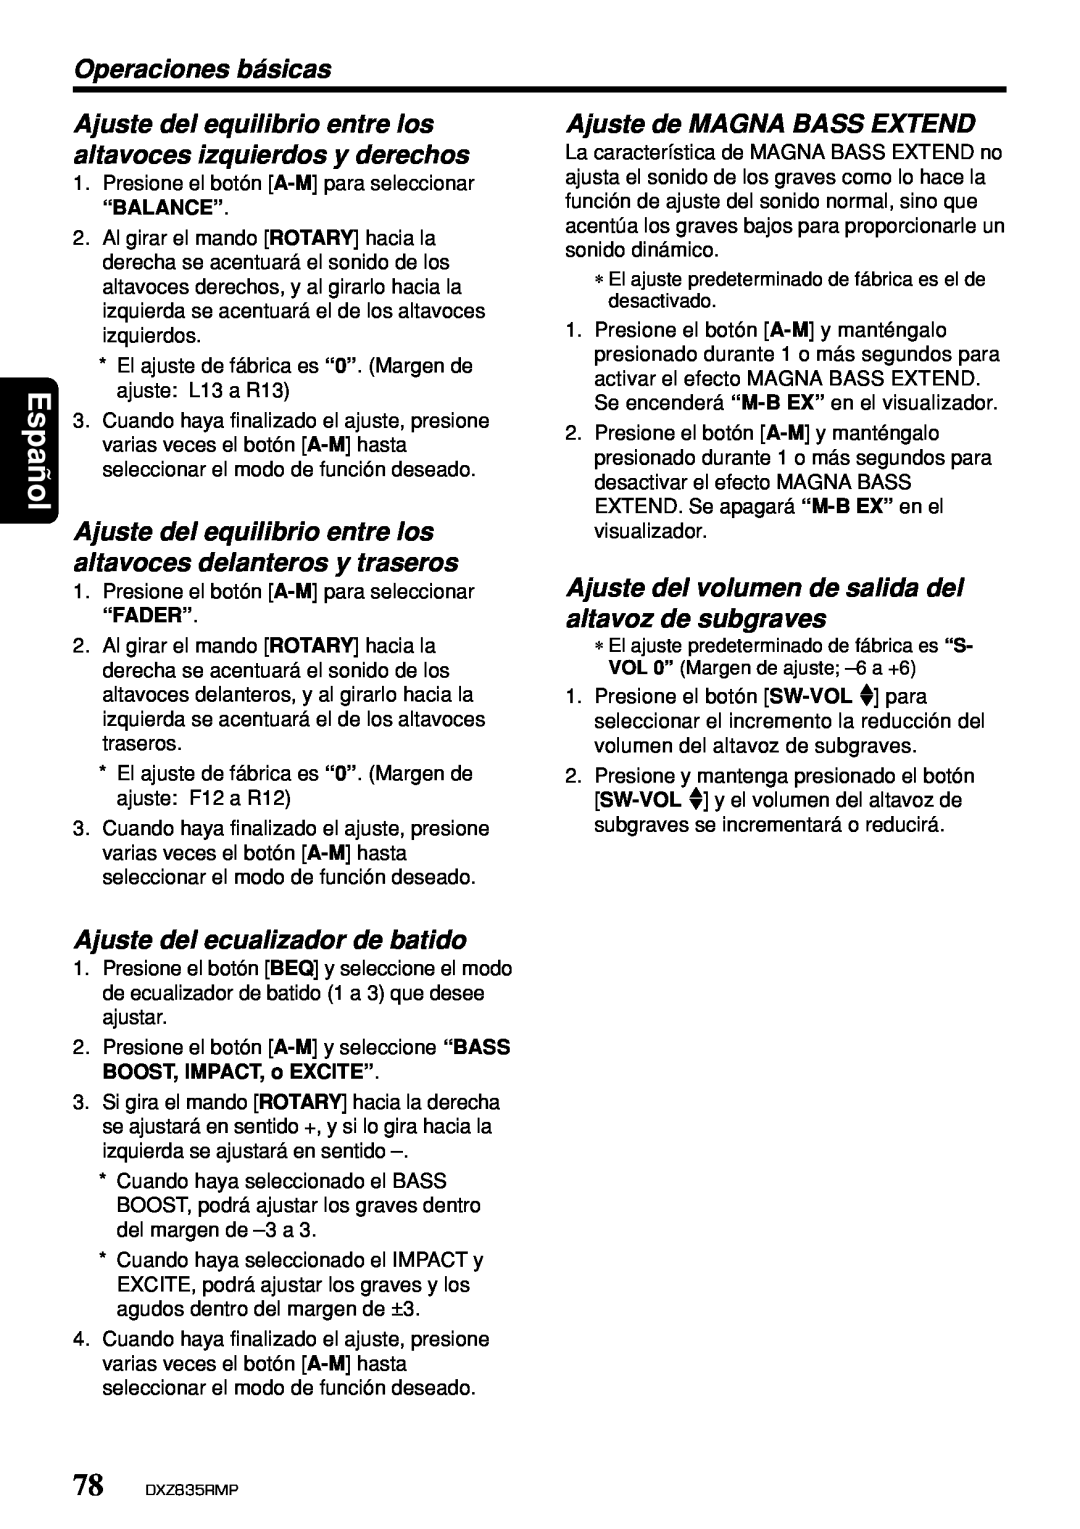 Clarion DXZ835MP Ajuste del equilibrio entre los, Ajuste de MAGNA BASS EXTEND, altavoces izquierdos y derechos, Español 